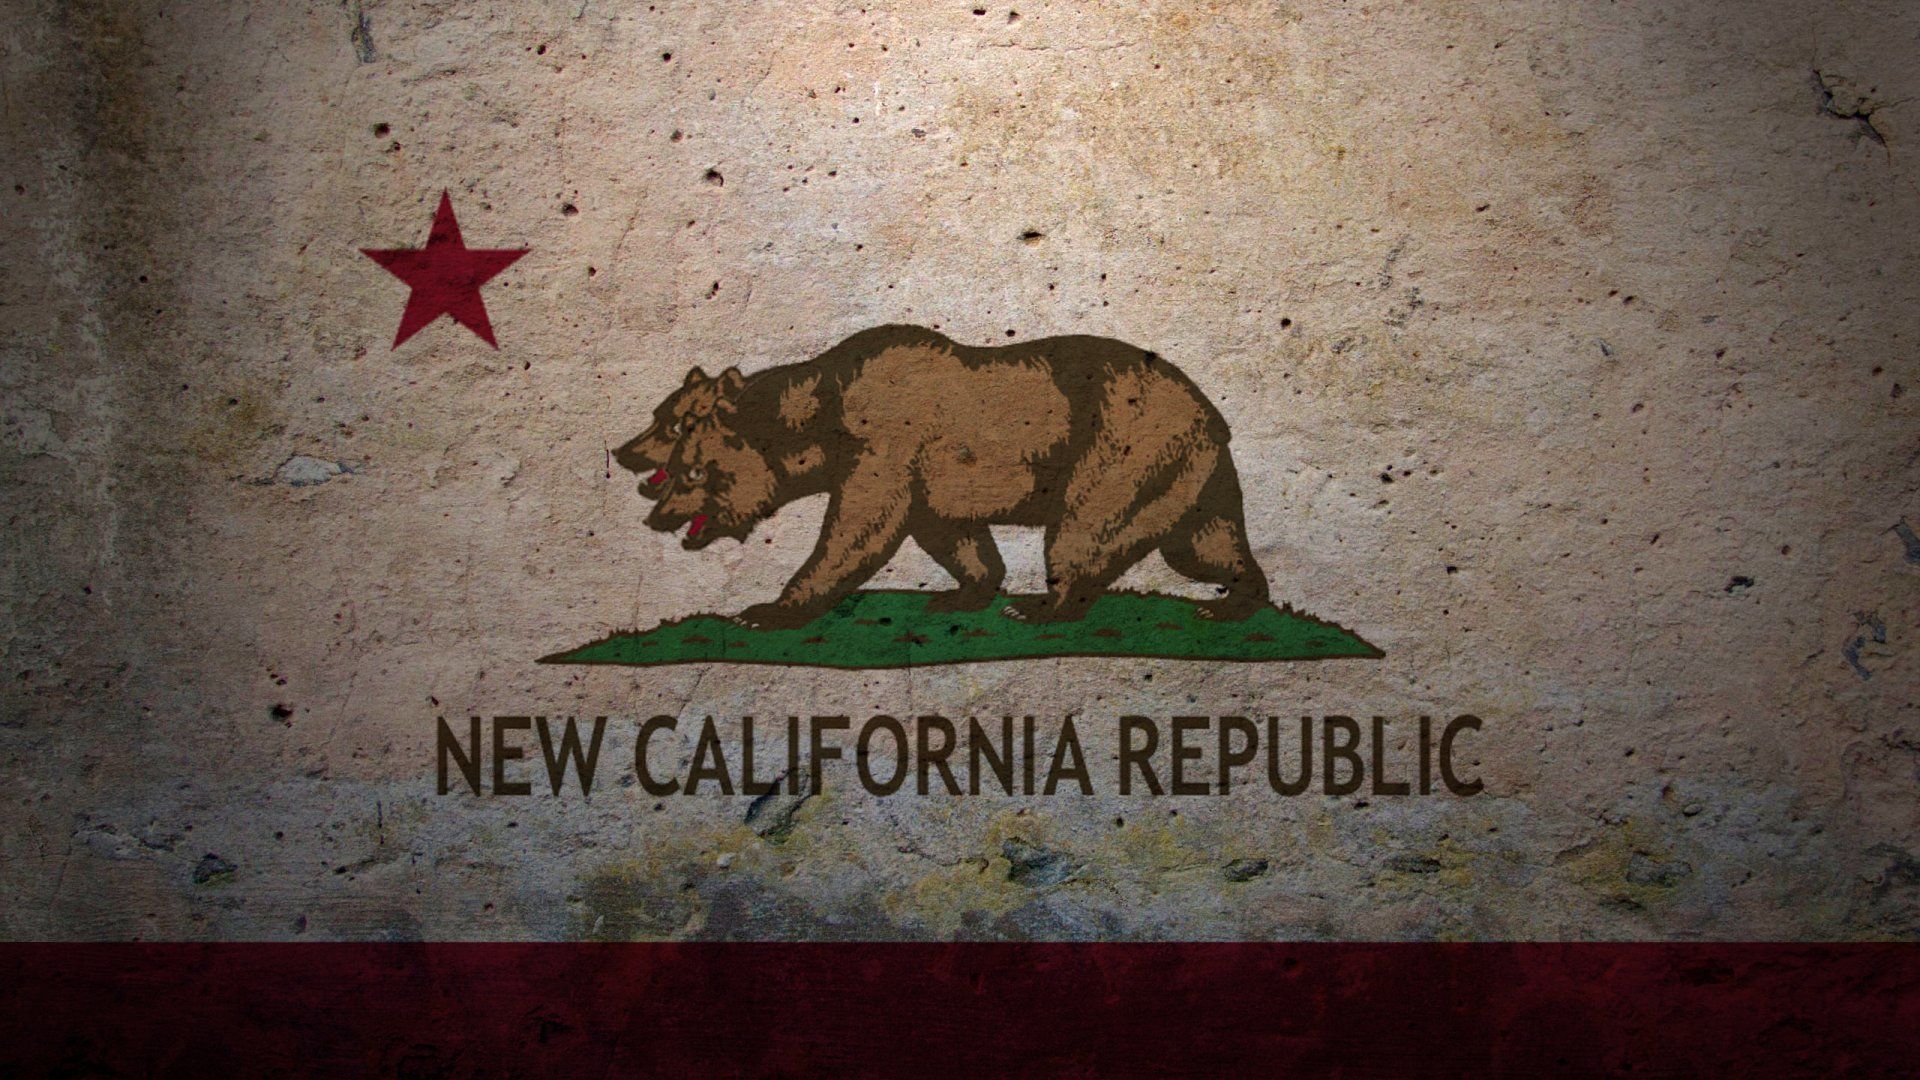 New California Republic HD Wallpaper | 1920x1080 | ID:54653